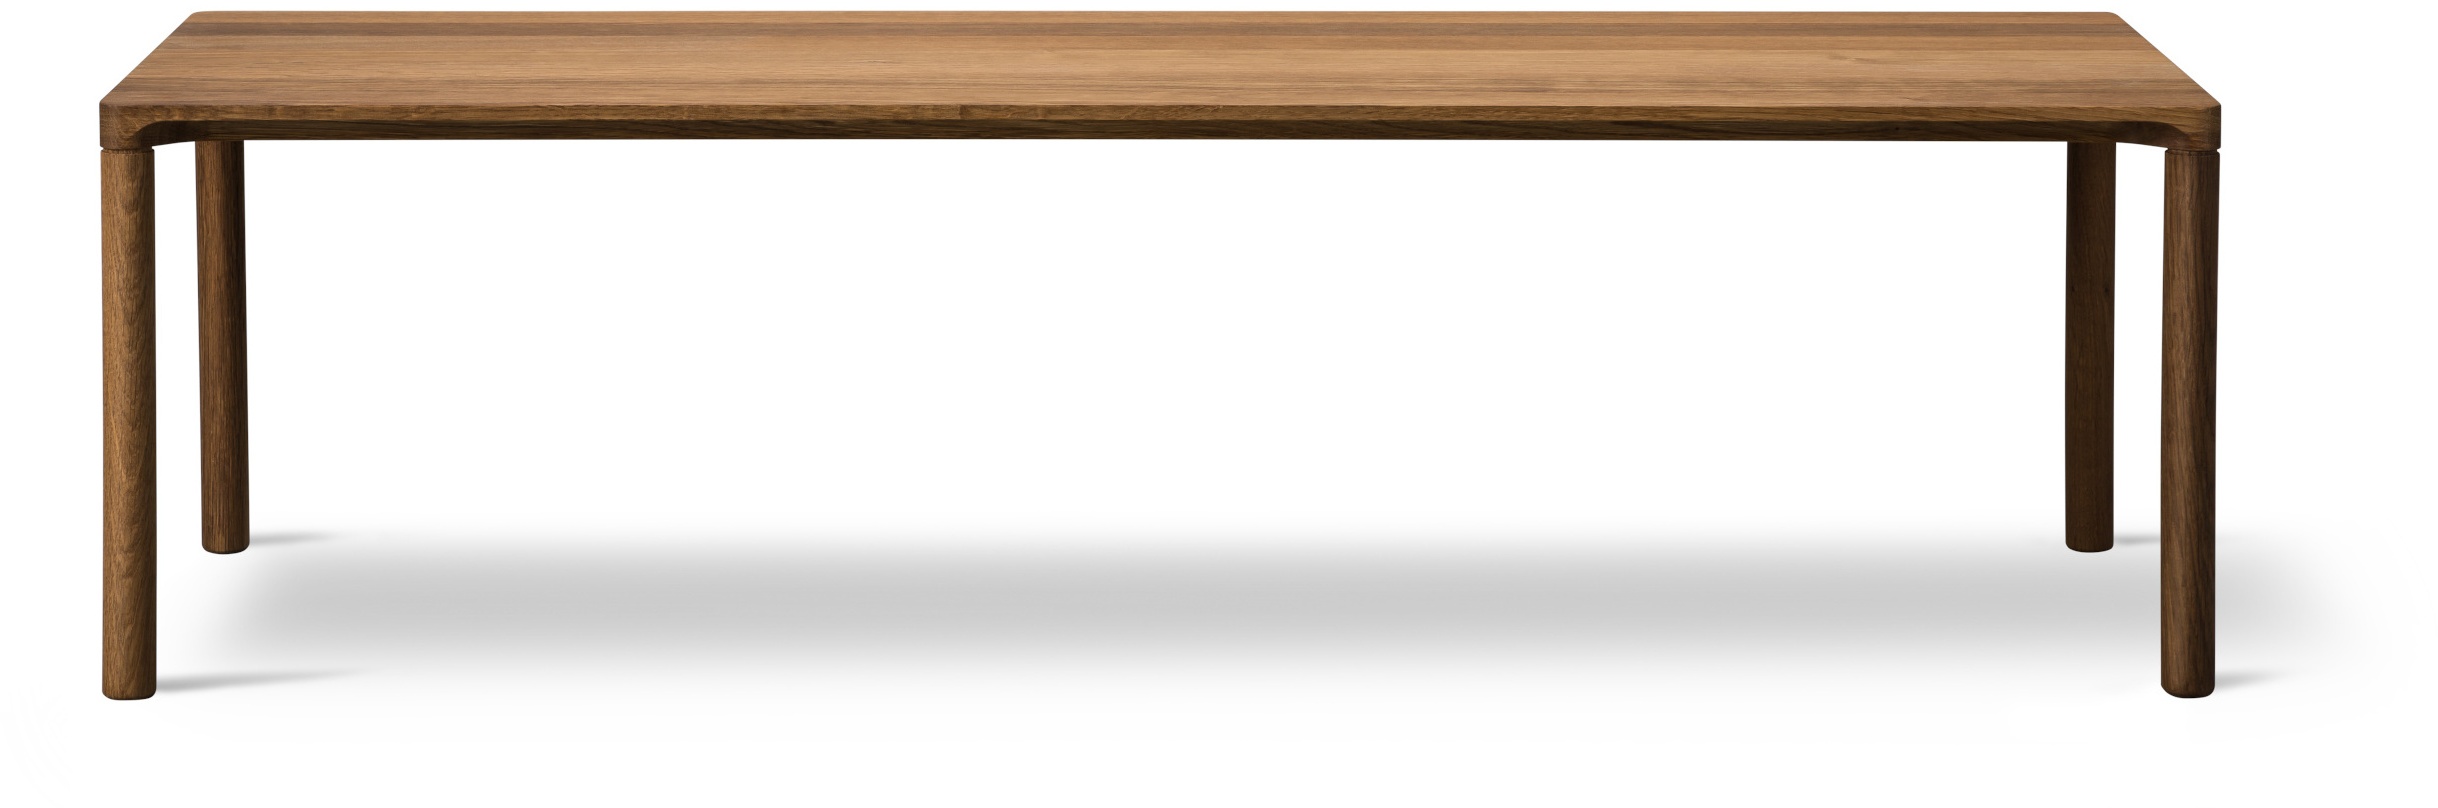 Piloti Wood Couchtisch, 120 x 39 cm, eiche geräuchert und geölt